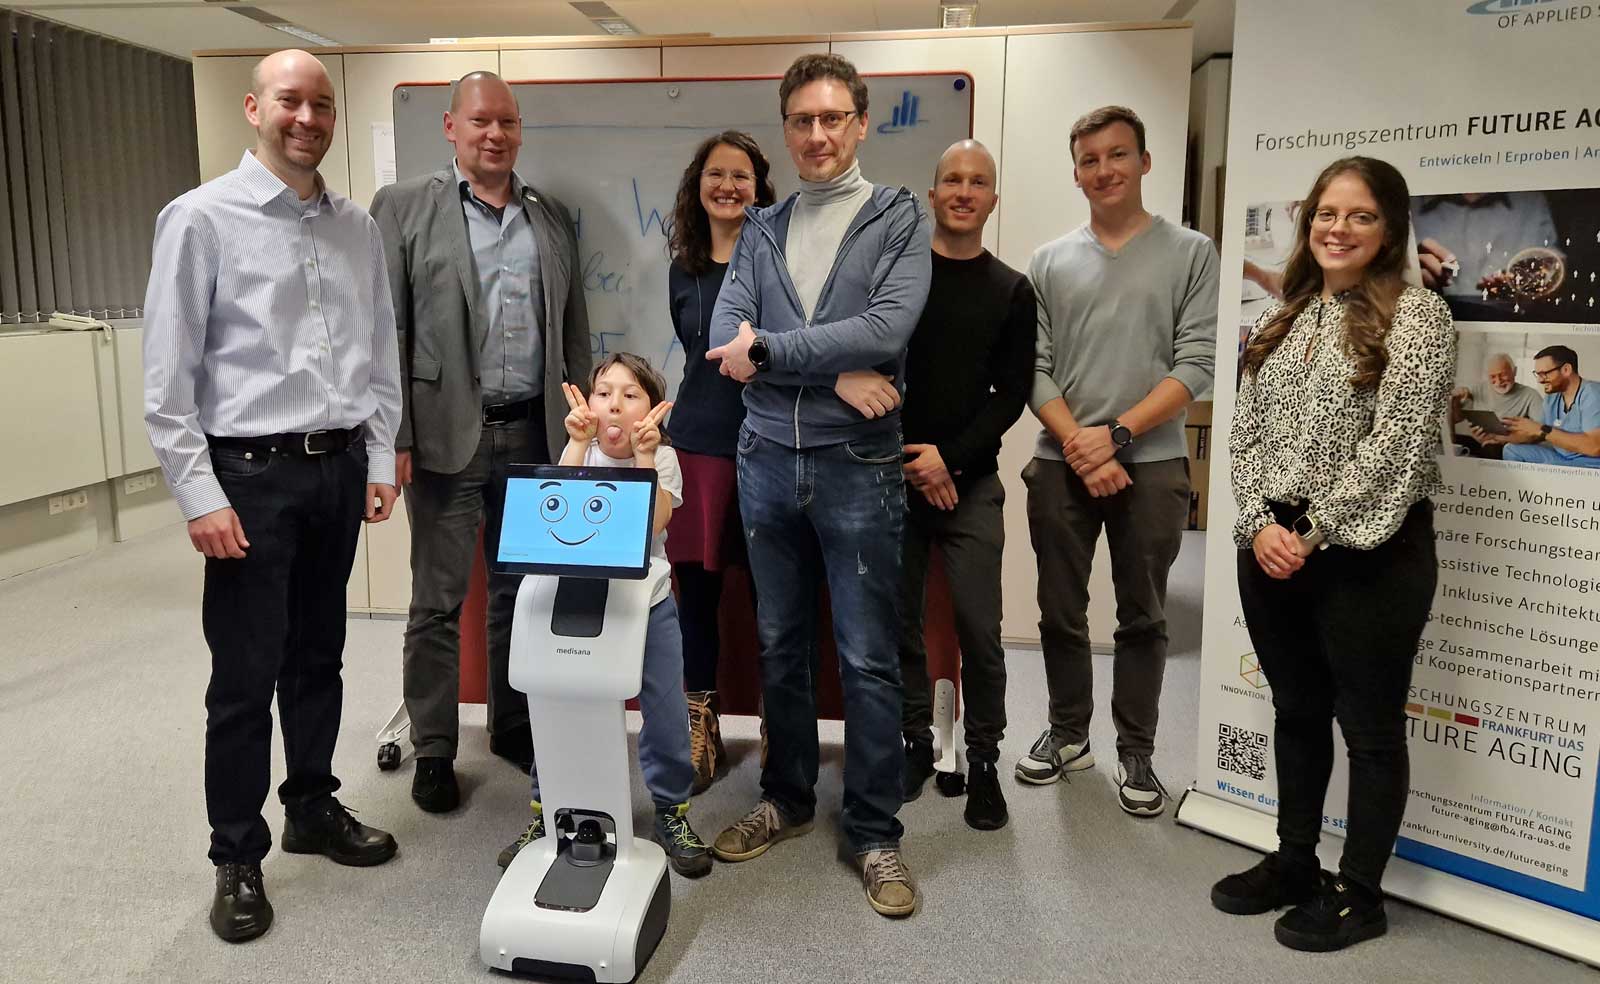 Meeting German <del>robots</del> friends